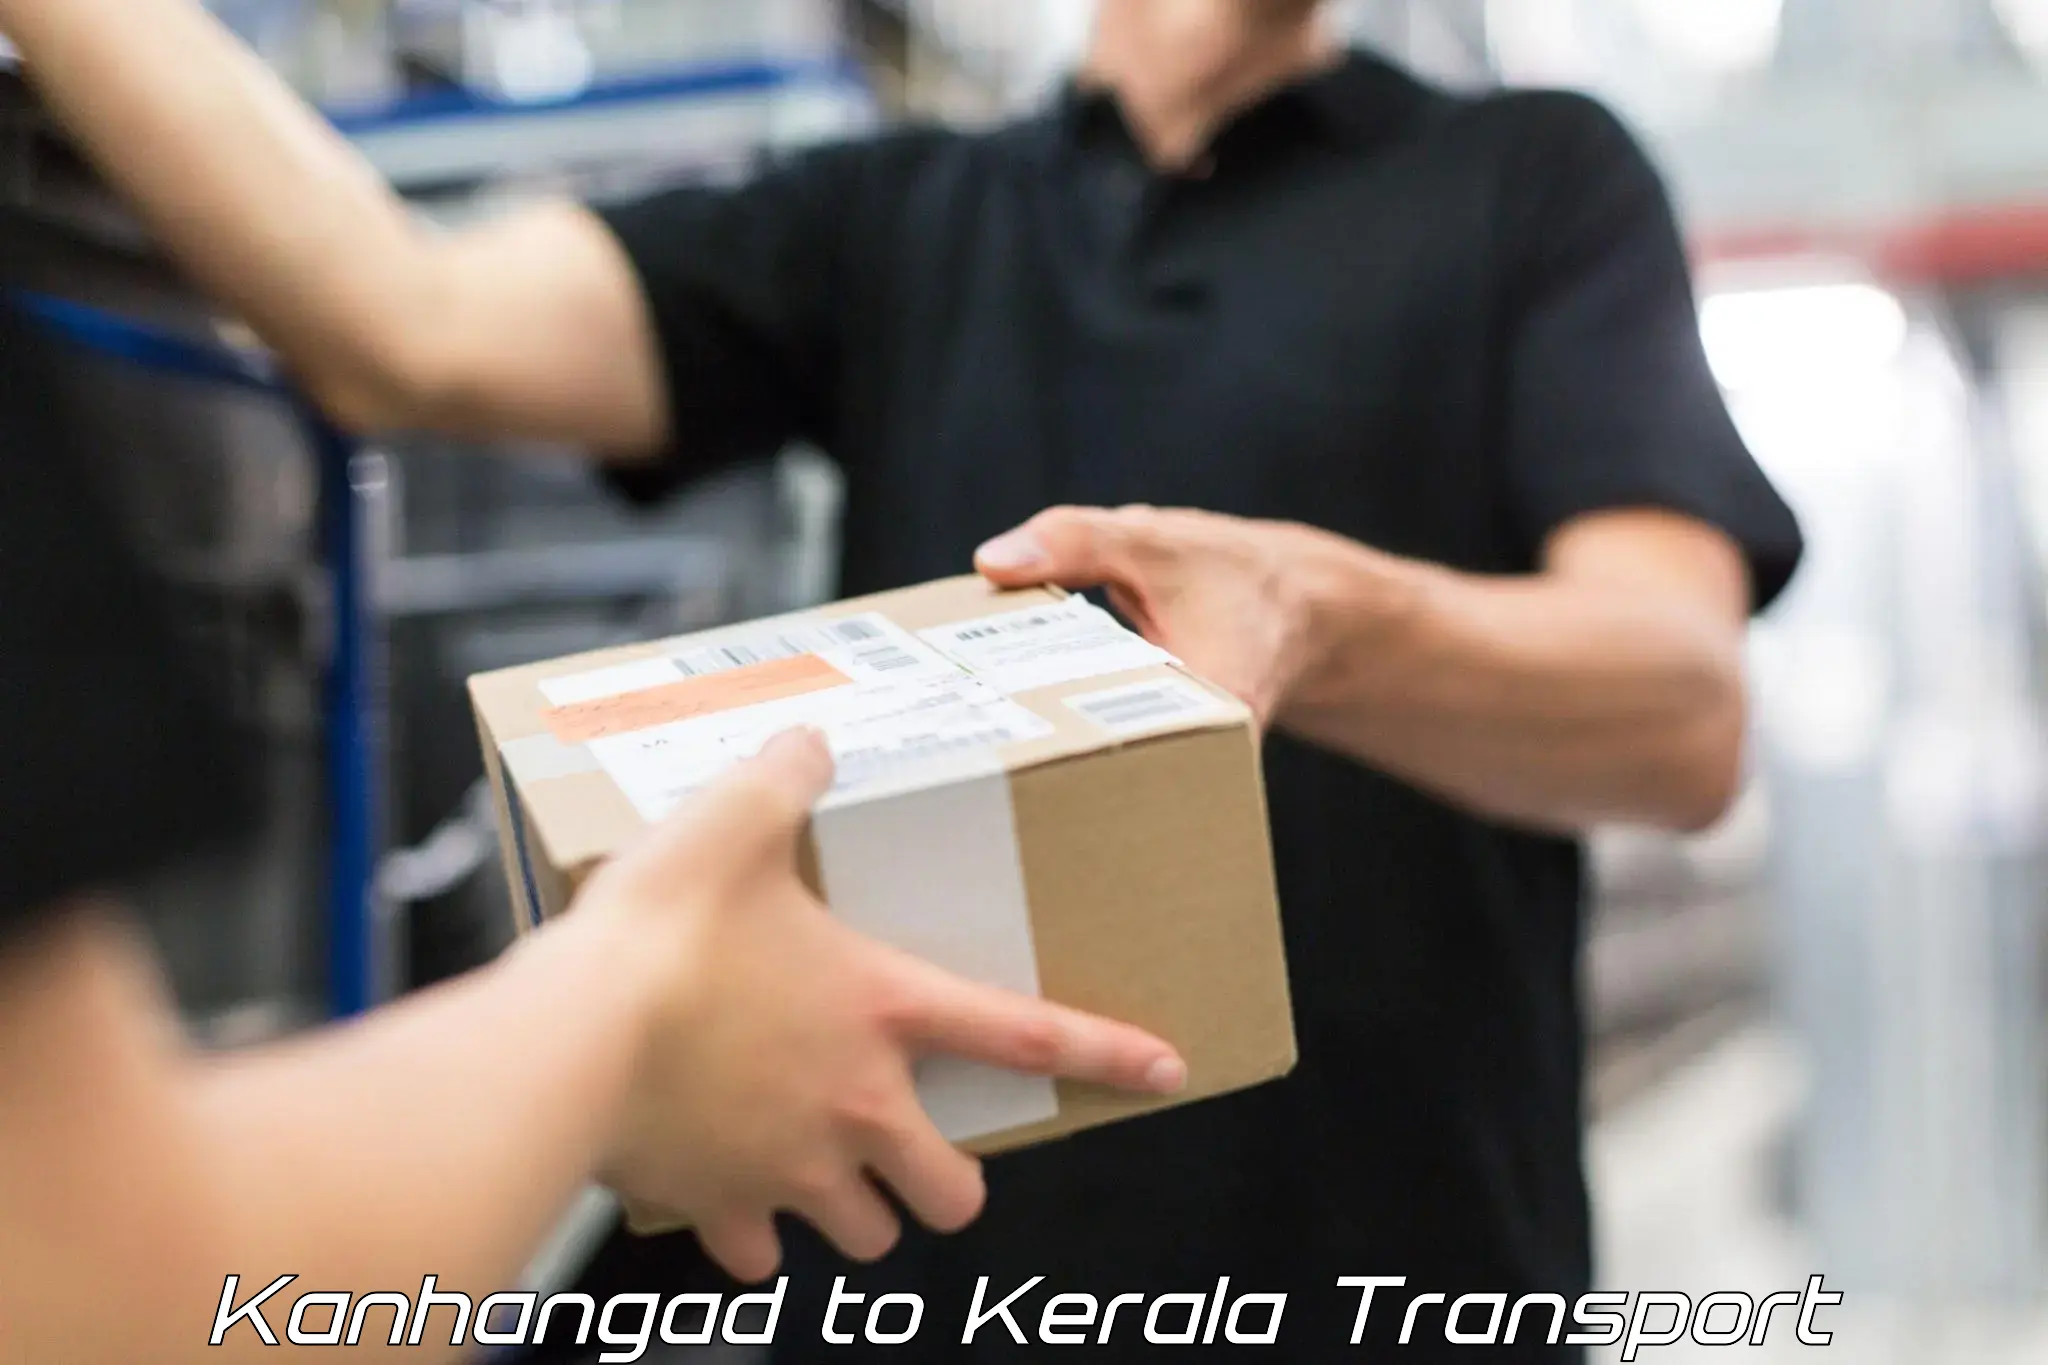 Furniture transport service Kanhangad to Chiramanangad